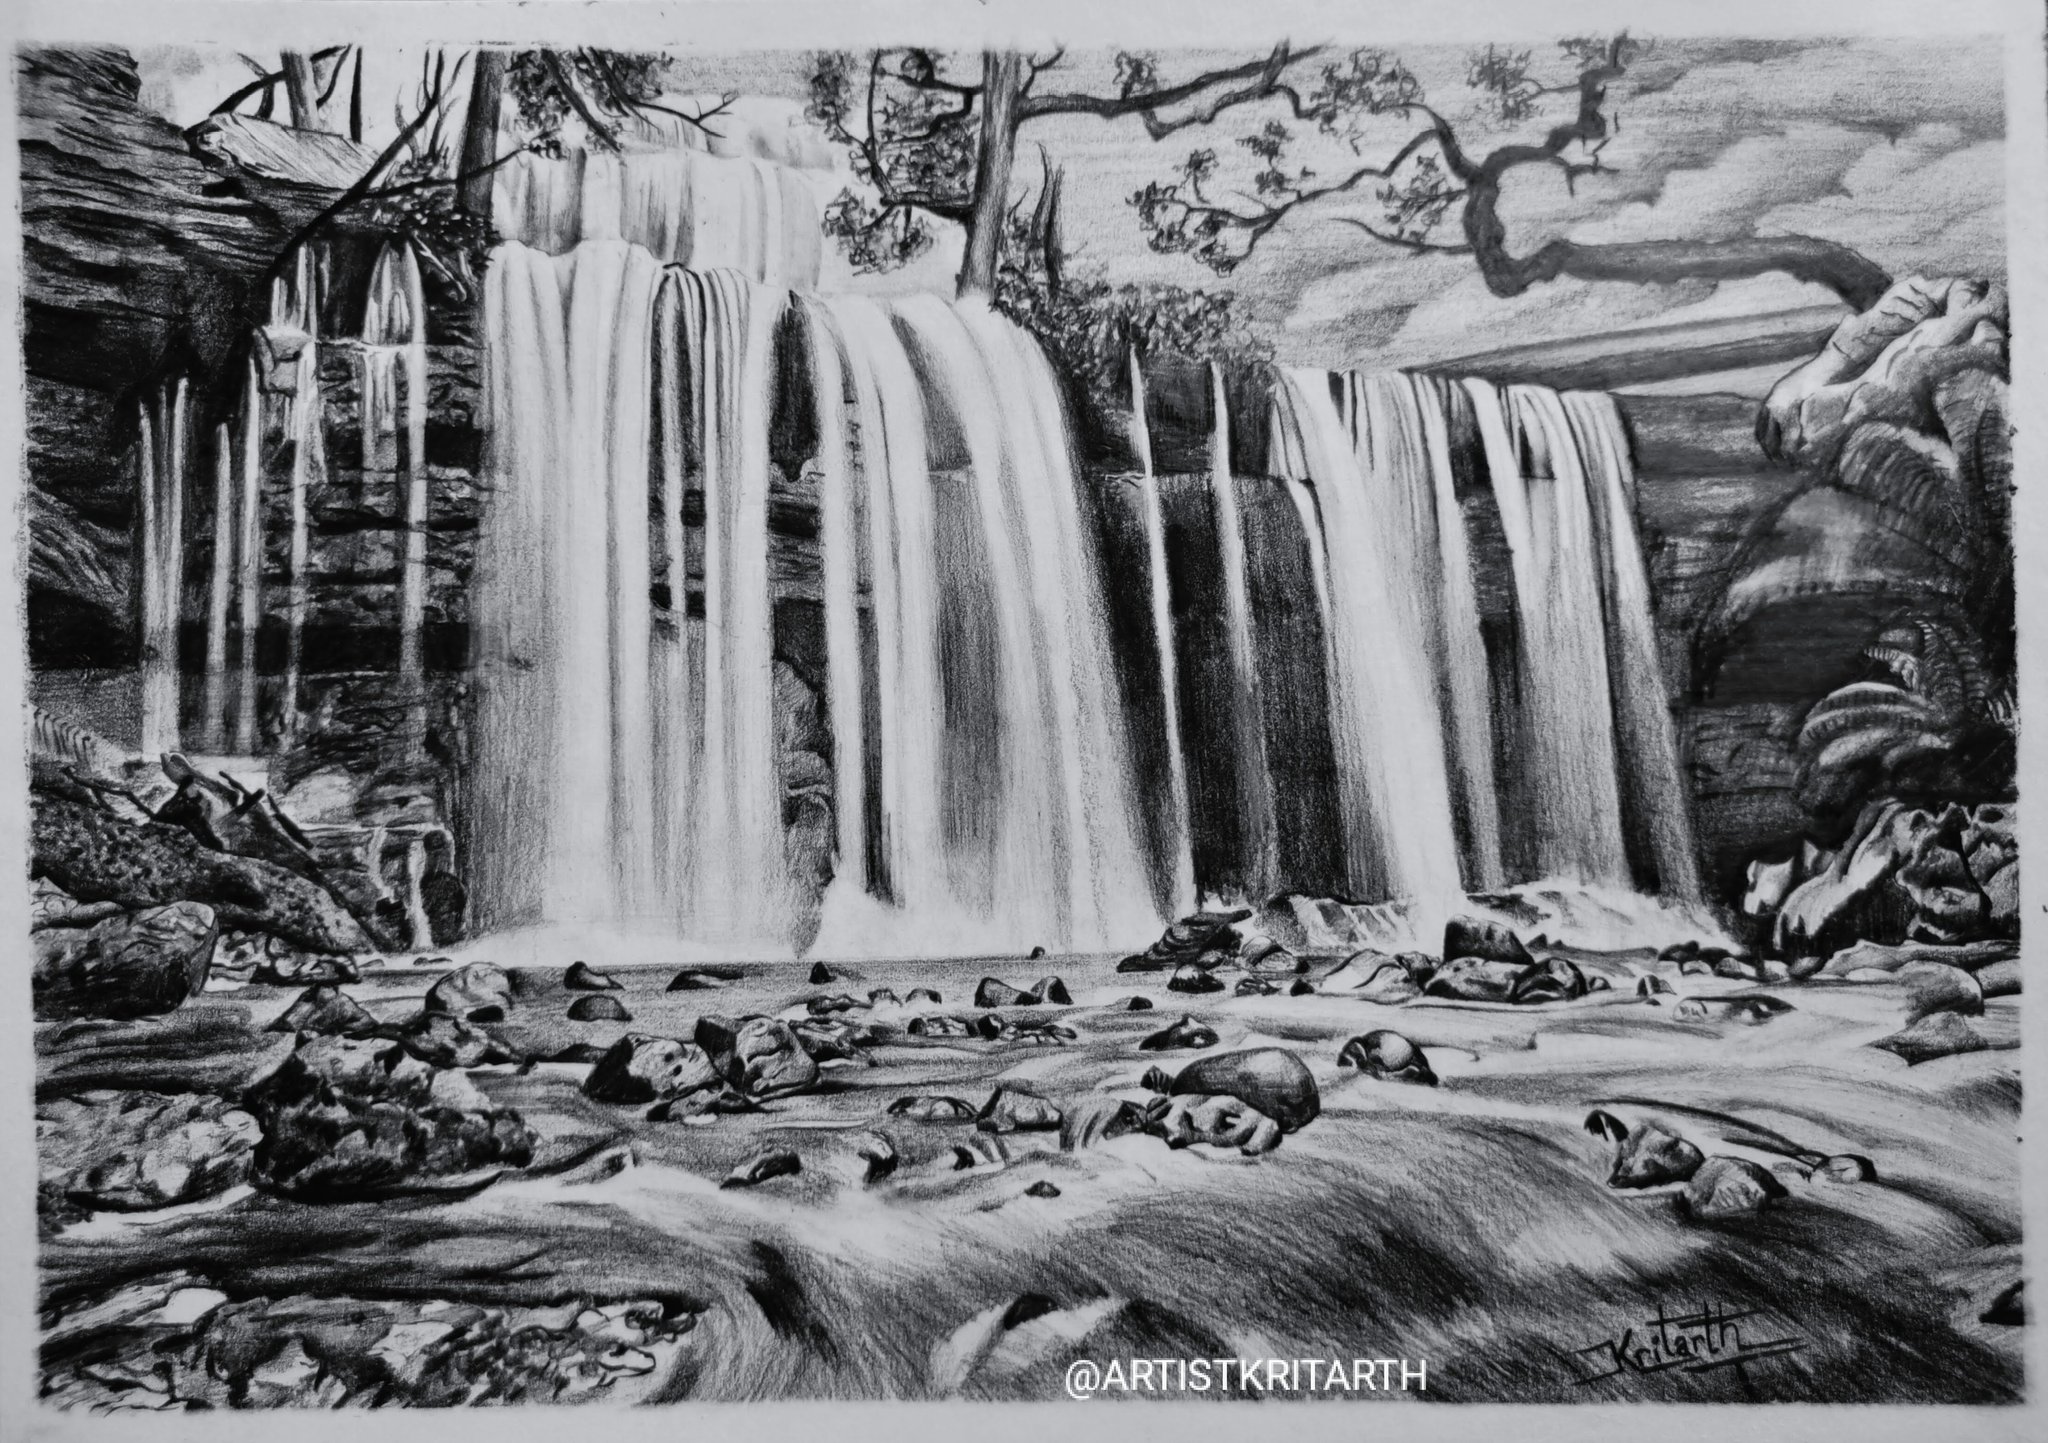 ArtStation - Waterfall (landscape) Pencil Sketch